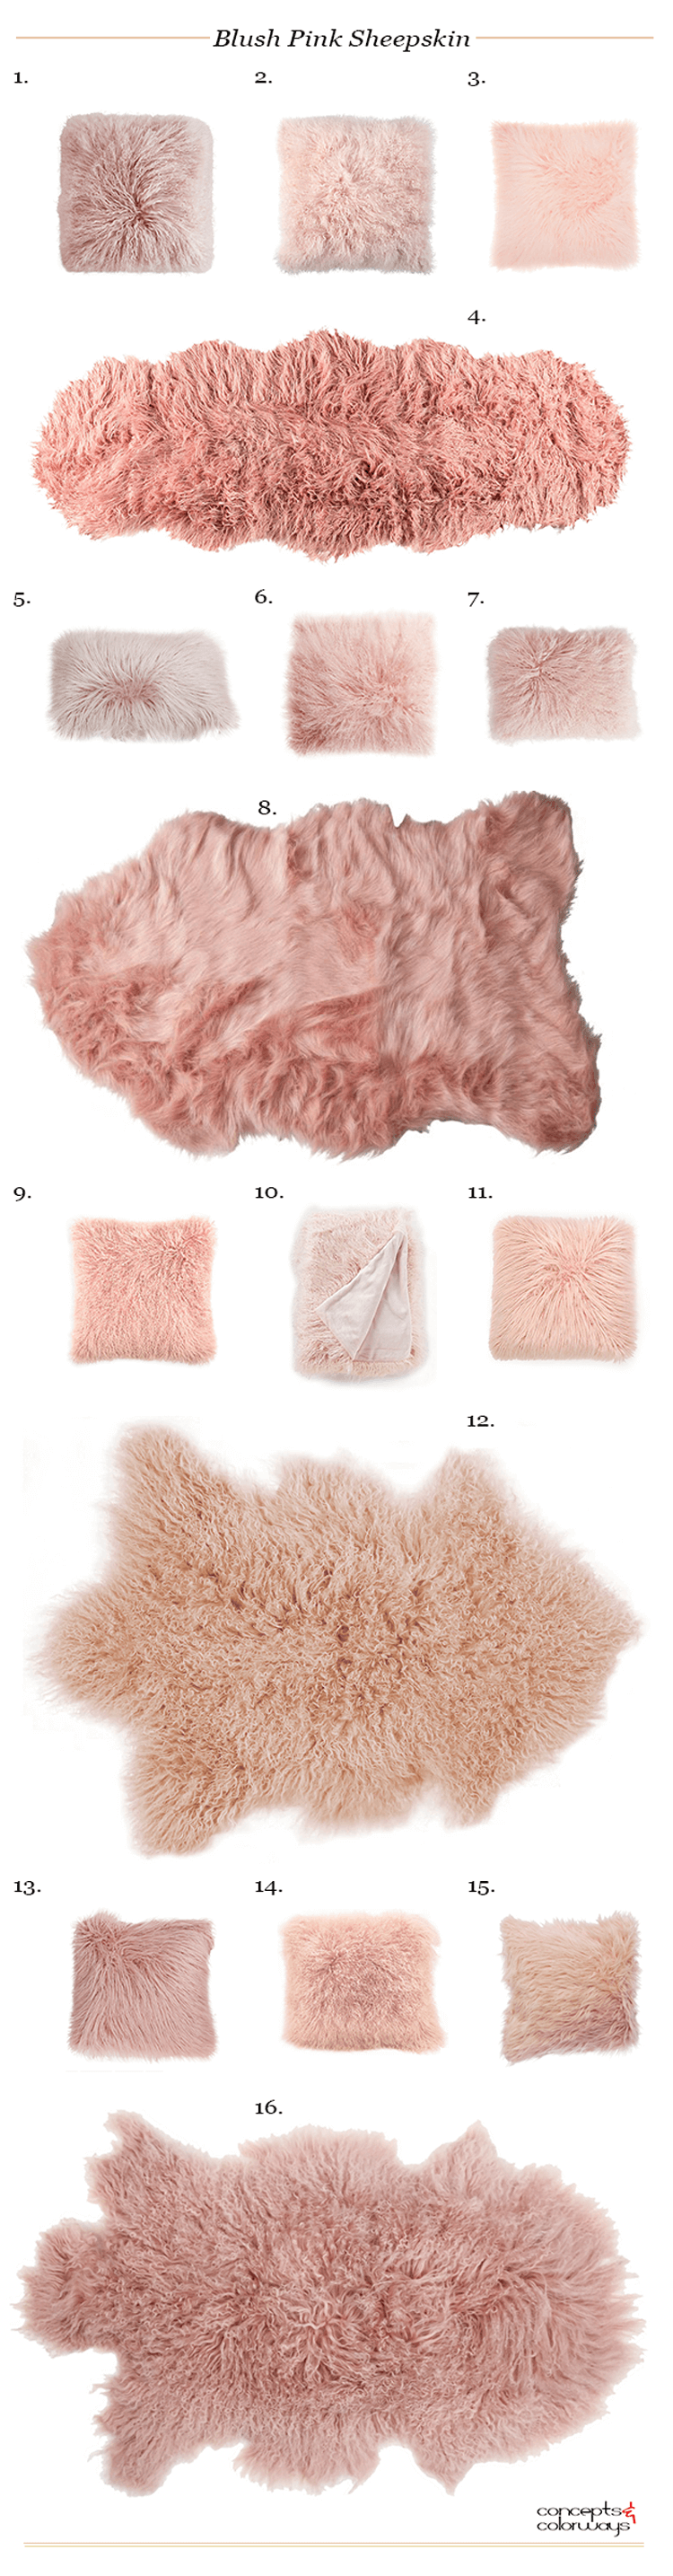 pink sheep skin, pink sheepskin rug, sheepskin pillow, faux fur pillows, fur pillows, mongolian fur pillows, sheepskin throw, sheepskin rug, blush pink throw, pink pillows, blush throw pillows